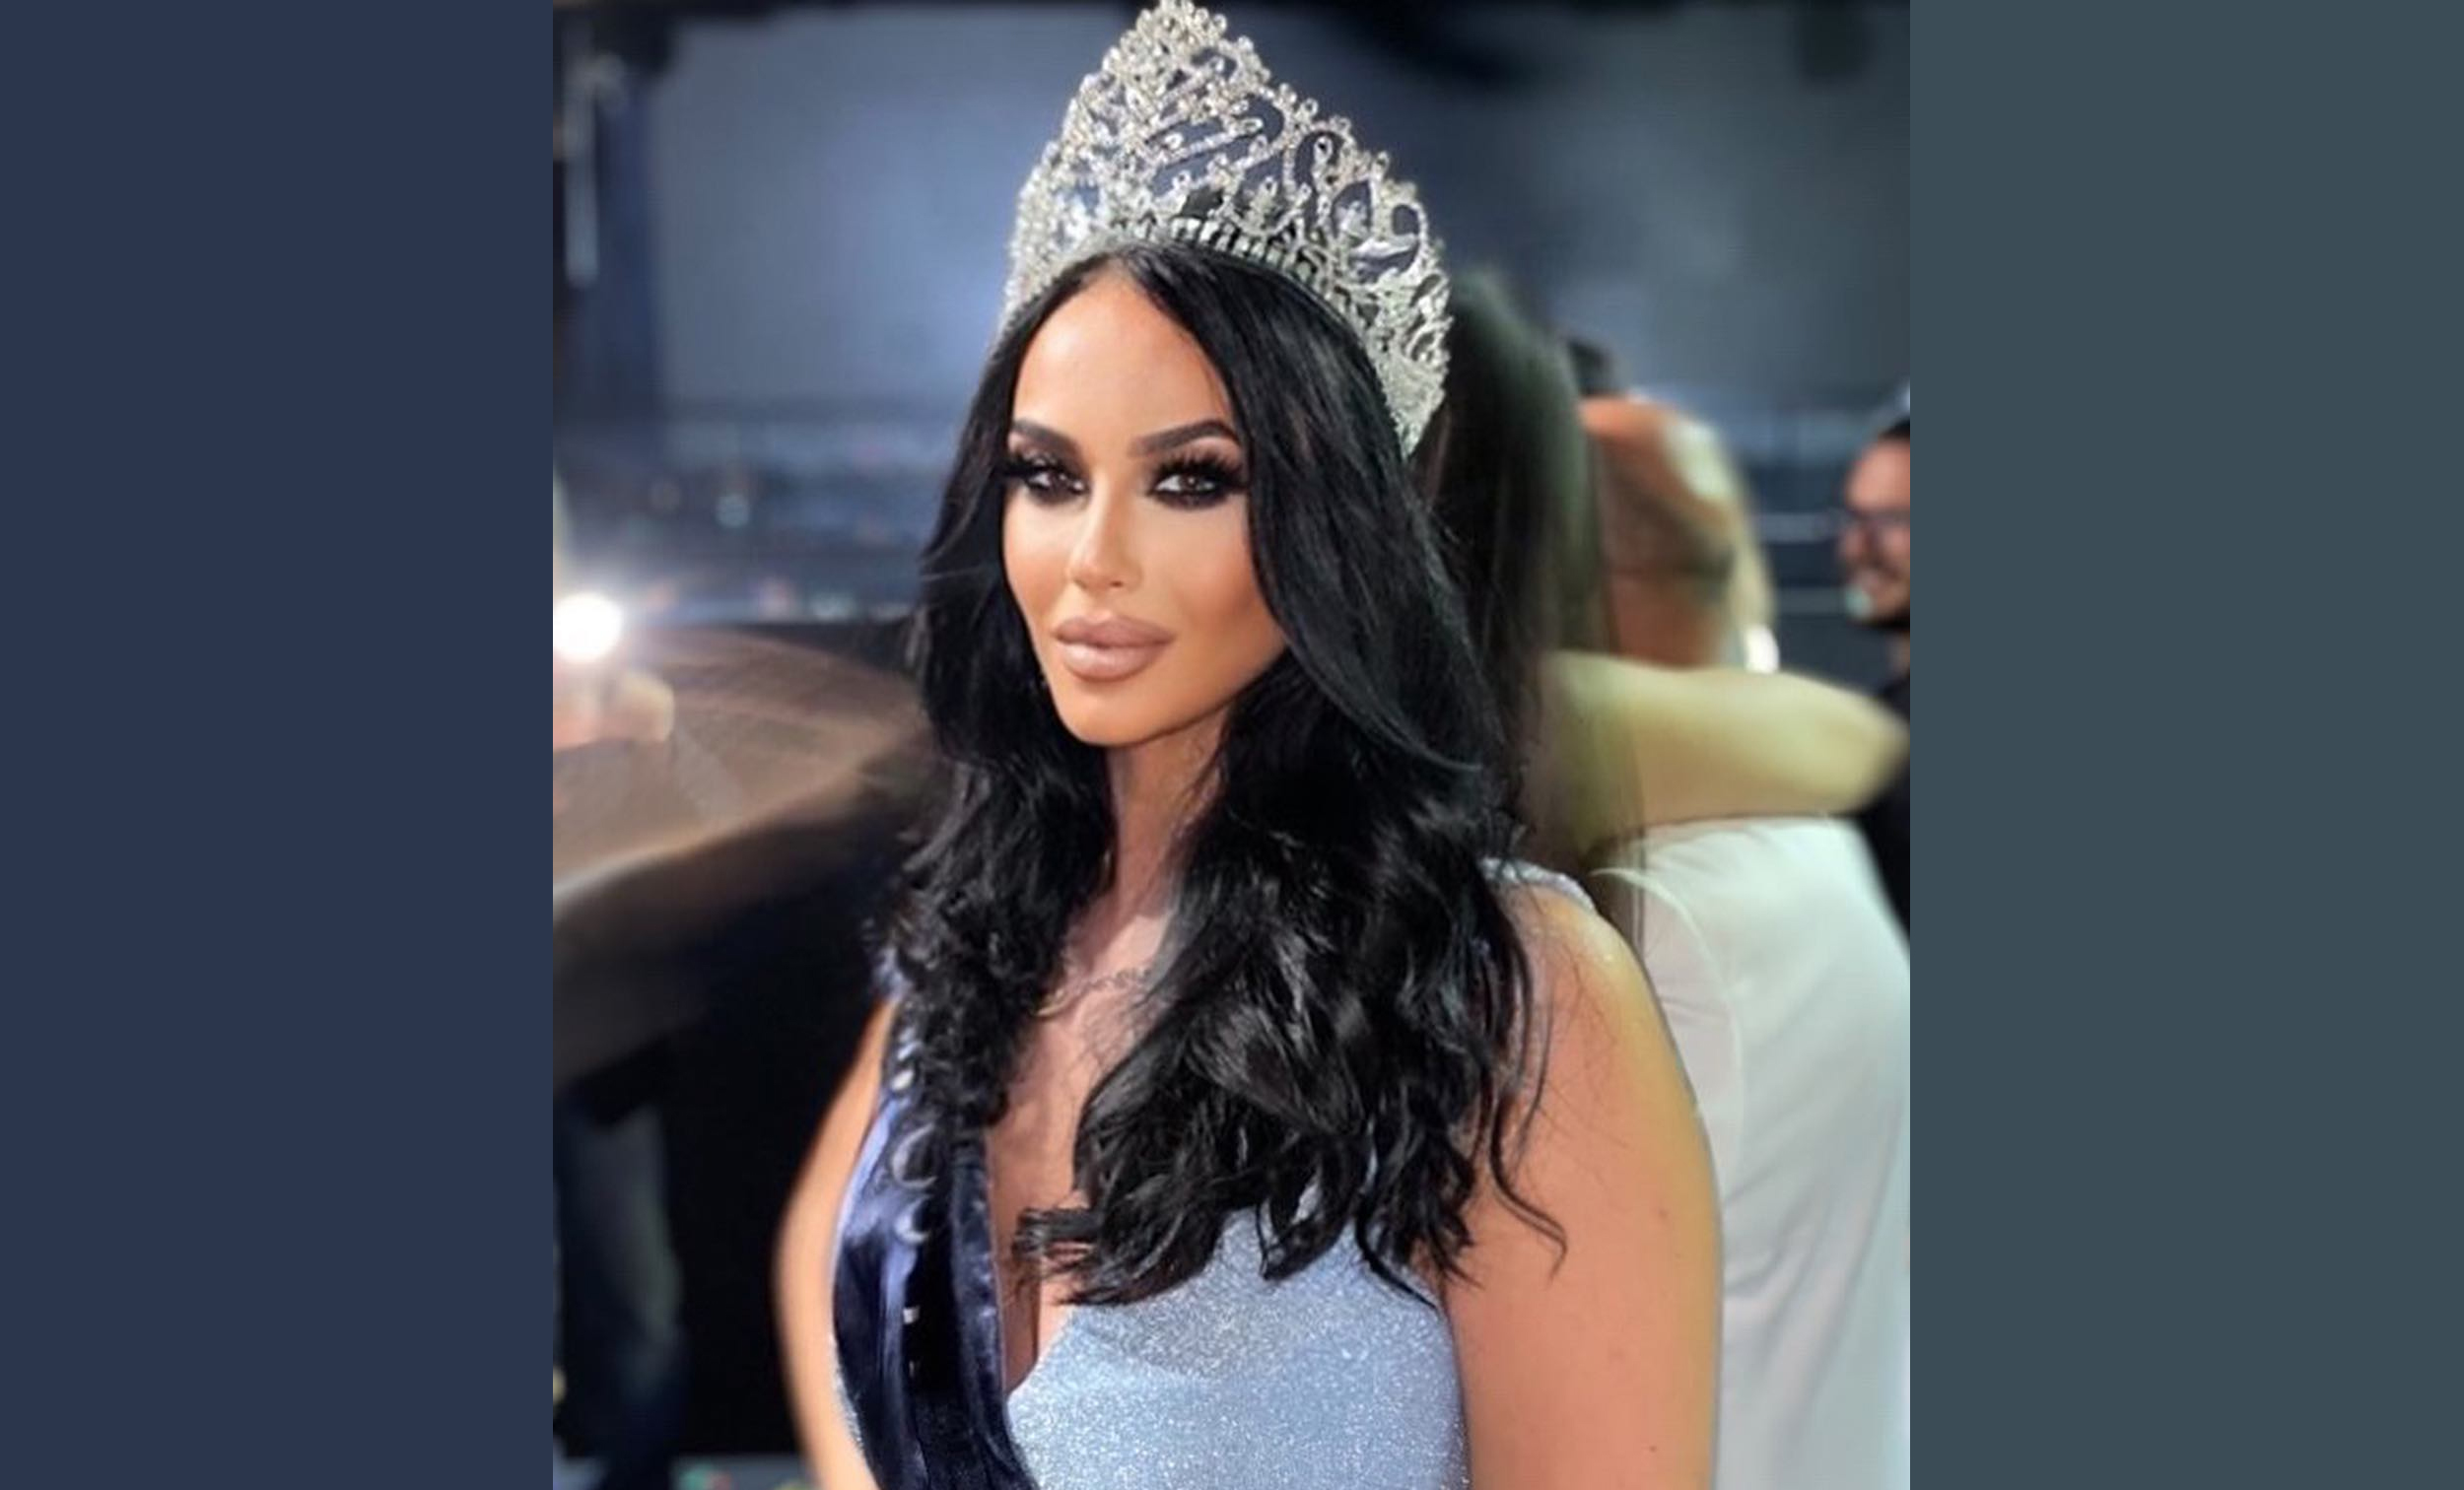 Korina Emmanouilidou is Miss Universe Greece 2022 Missosology